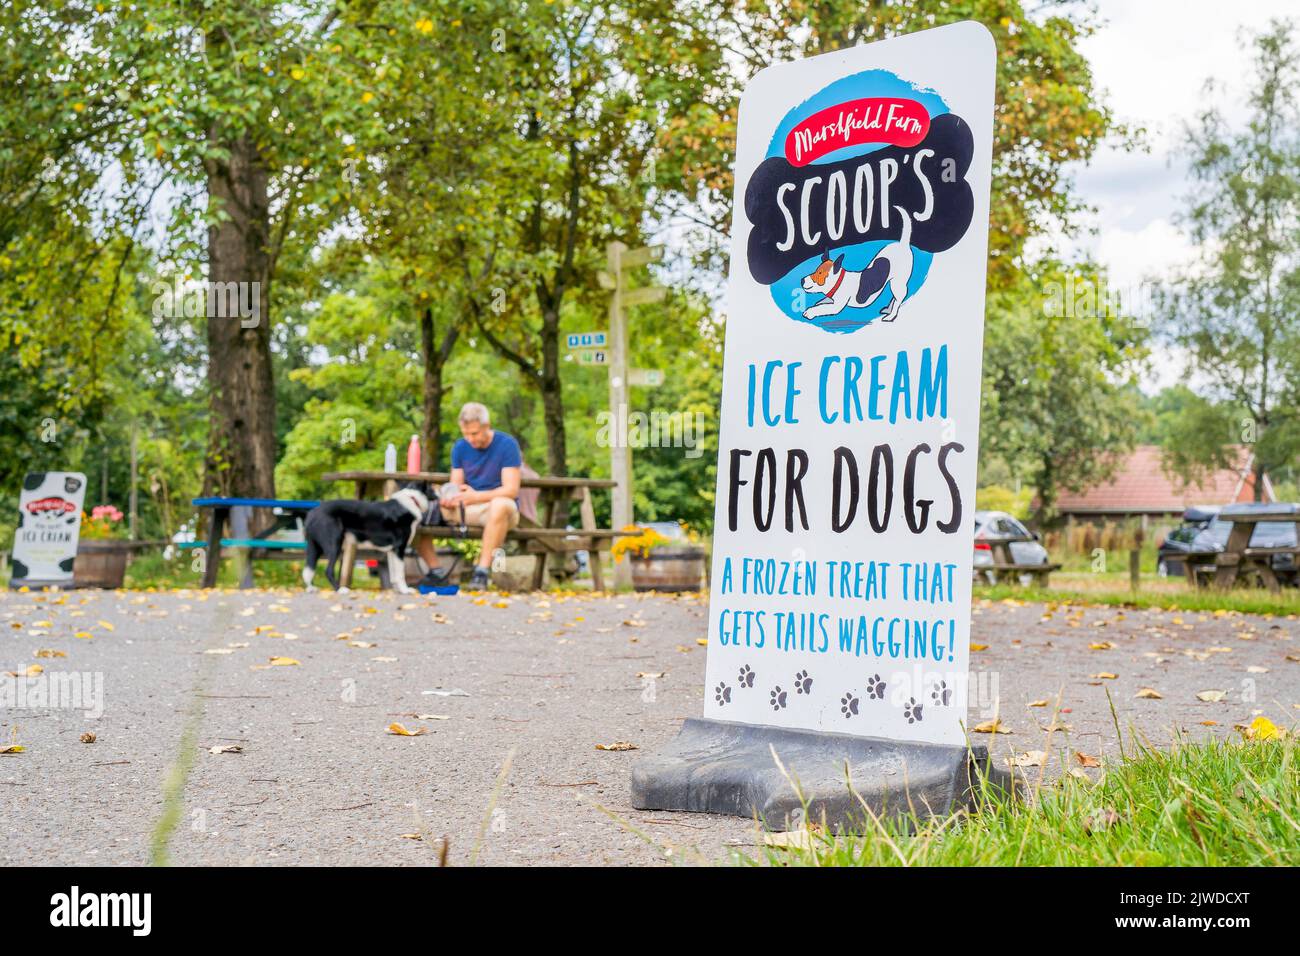 Vue de face d'un panneau dans un parc offrant de la crème glacée pour les chiens. Banque D'Images